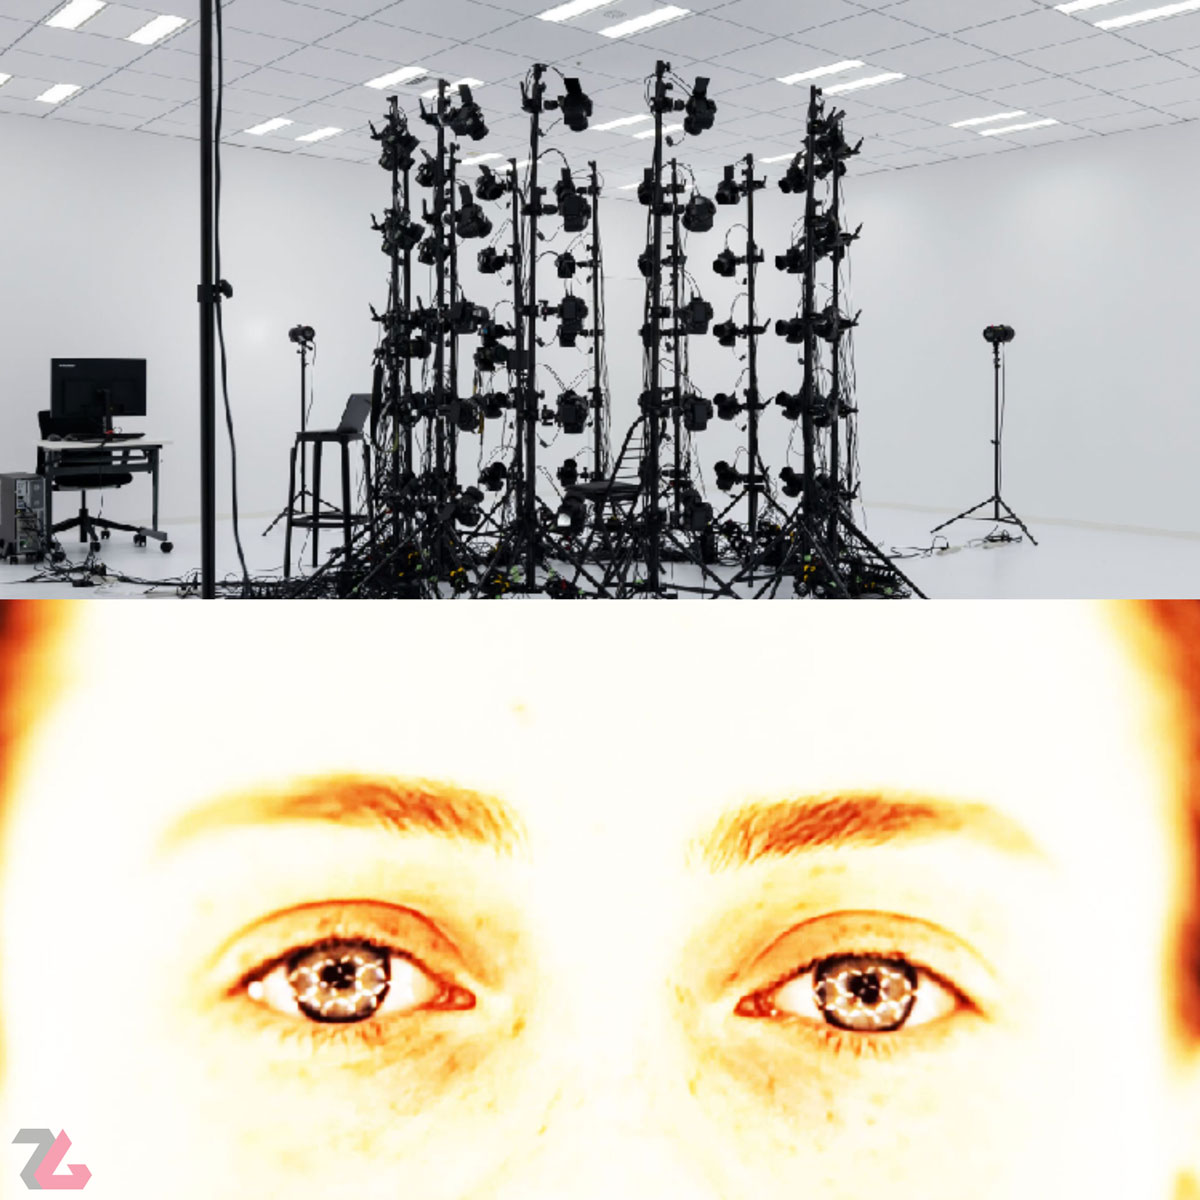 یک تصویر از استودیو کوجیما پروداکشنز و یک تصویر از منابع نوری و ساختار شبکه‌ای در چشم های سوفیا لیلیس در تریلر بازی Overdose هیدئو کوجیما